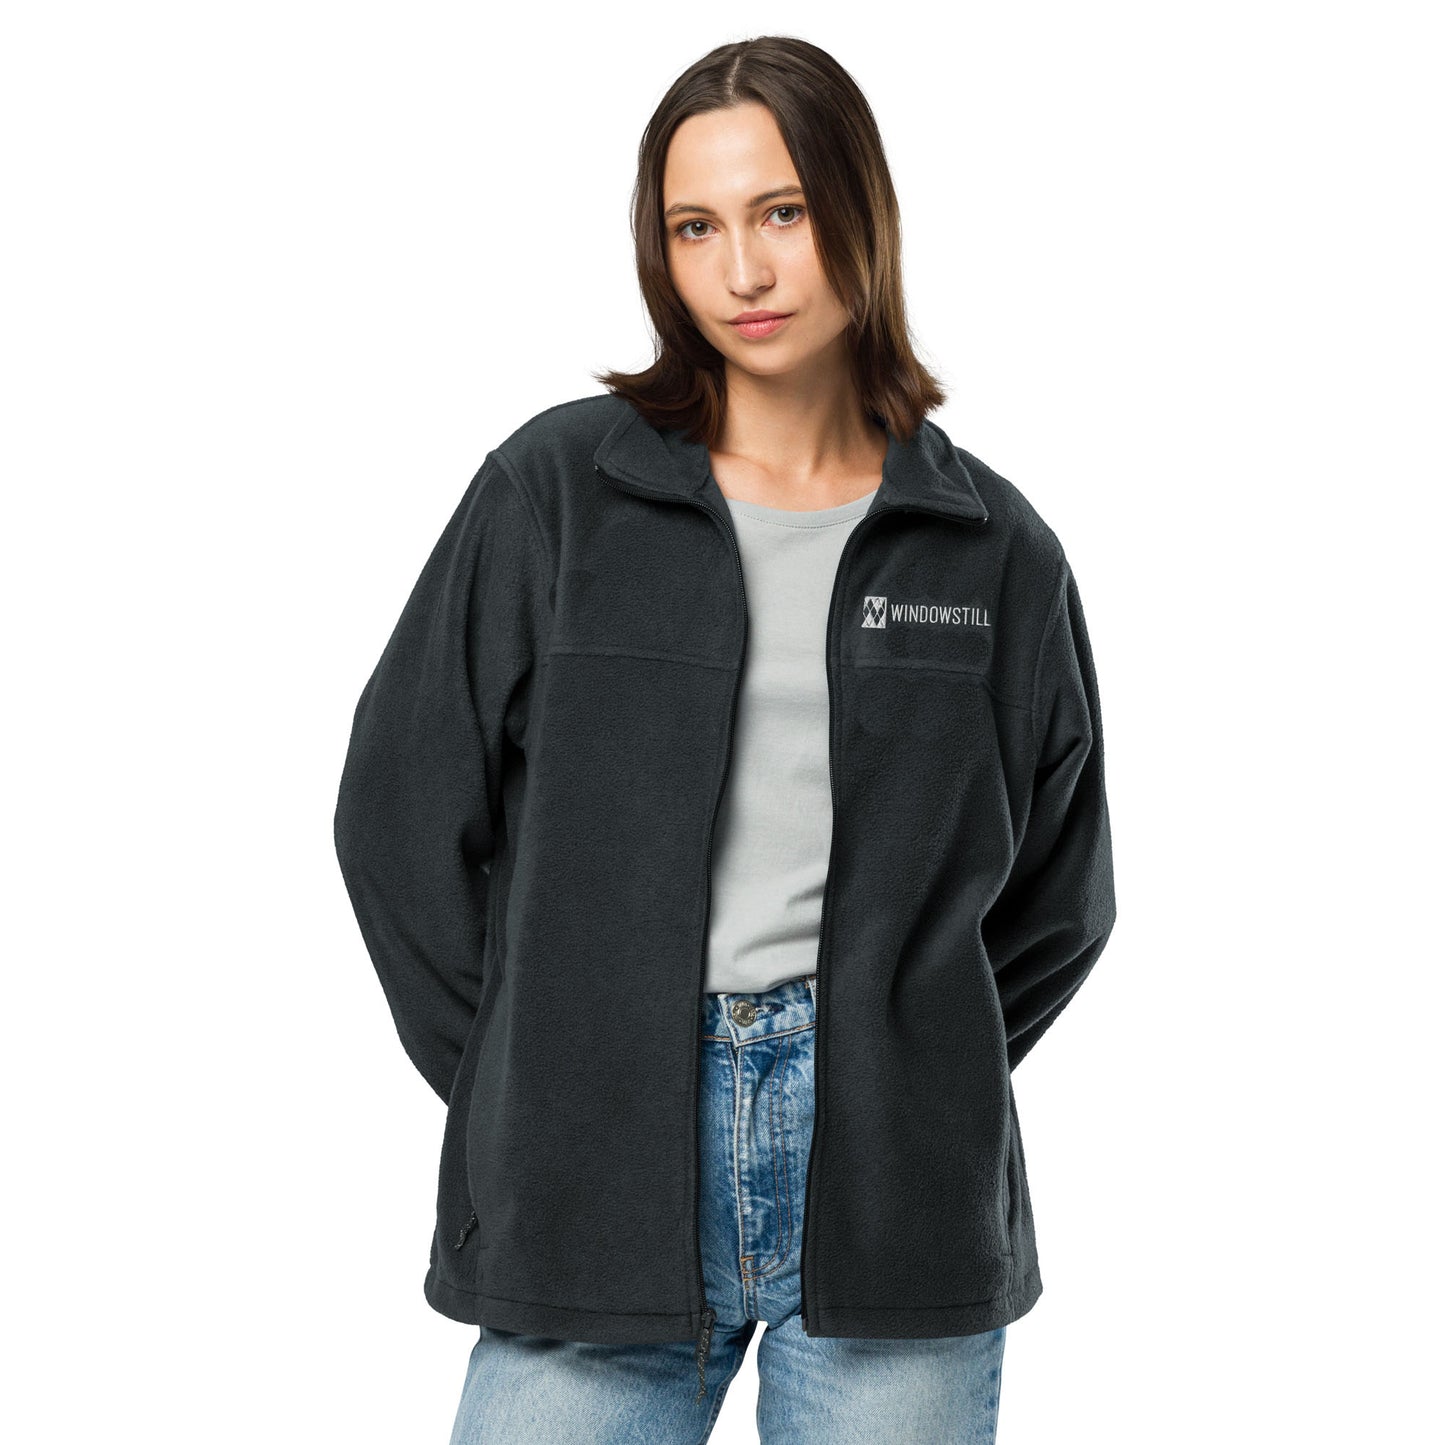 WindowStill Women's Journey Fleece Jacket